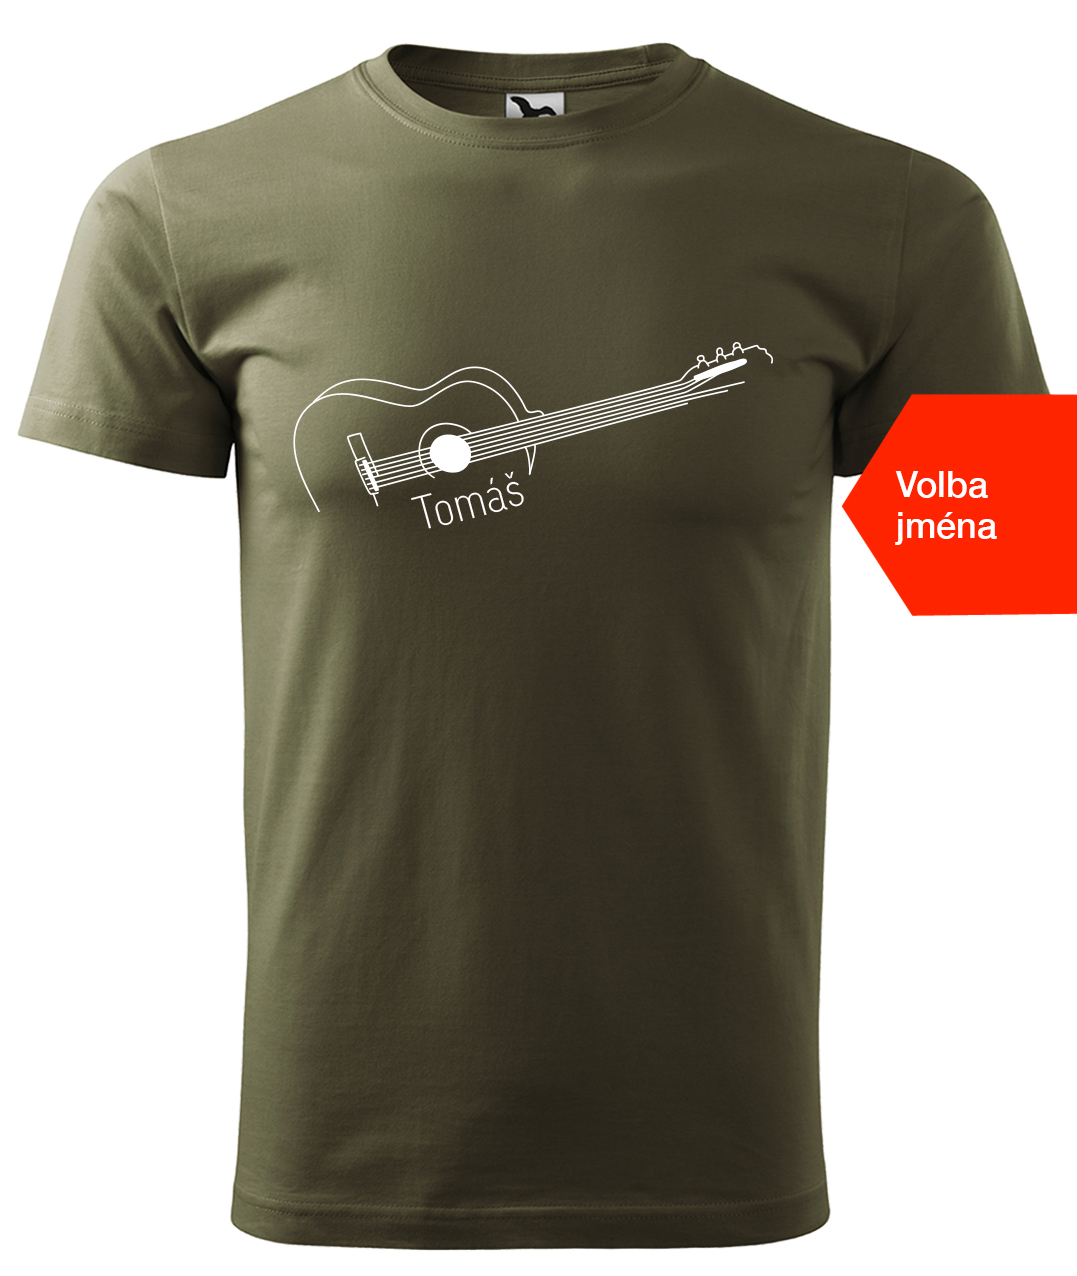 Dětské tričko s kytarou se jménem - Stylizovaná kytara Velikost: 8 let / 134 cm, Barva: Military (69), Délka rukávu: Krátký rukáv